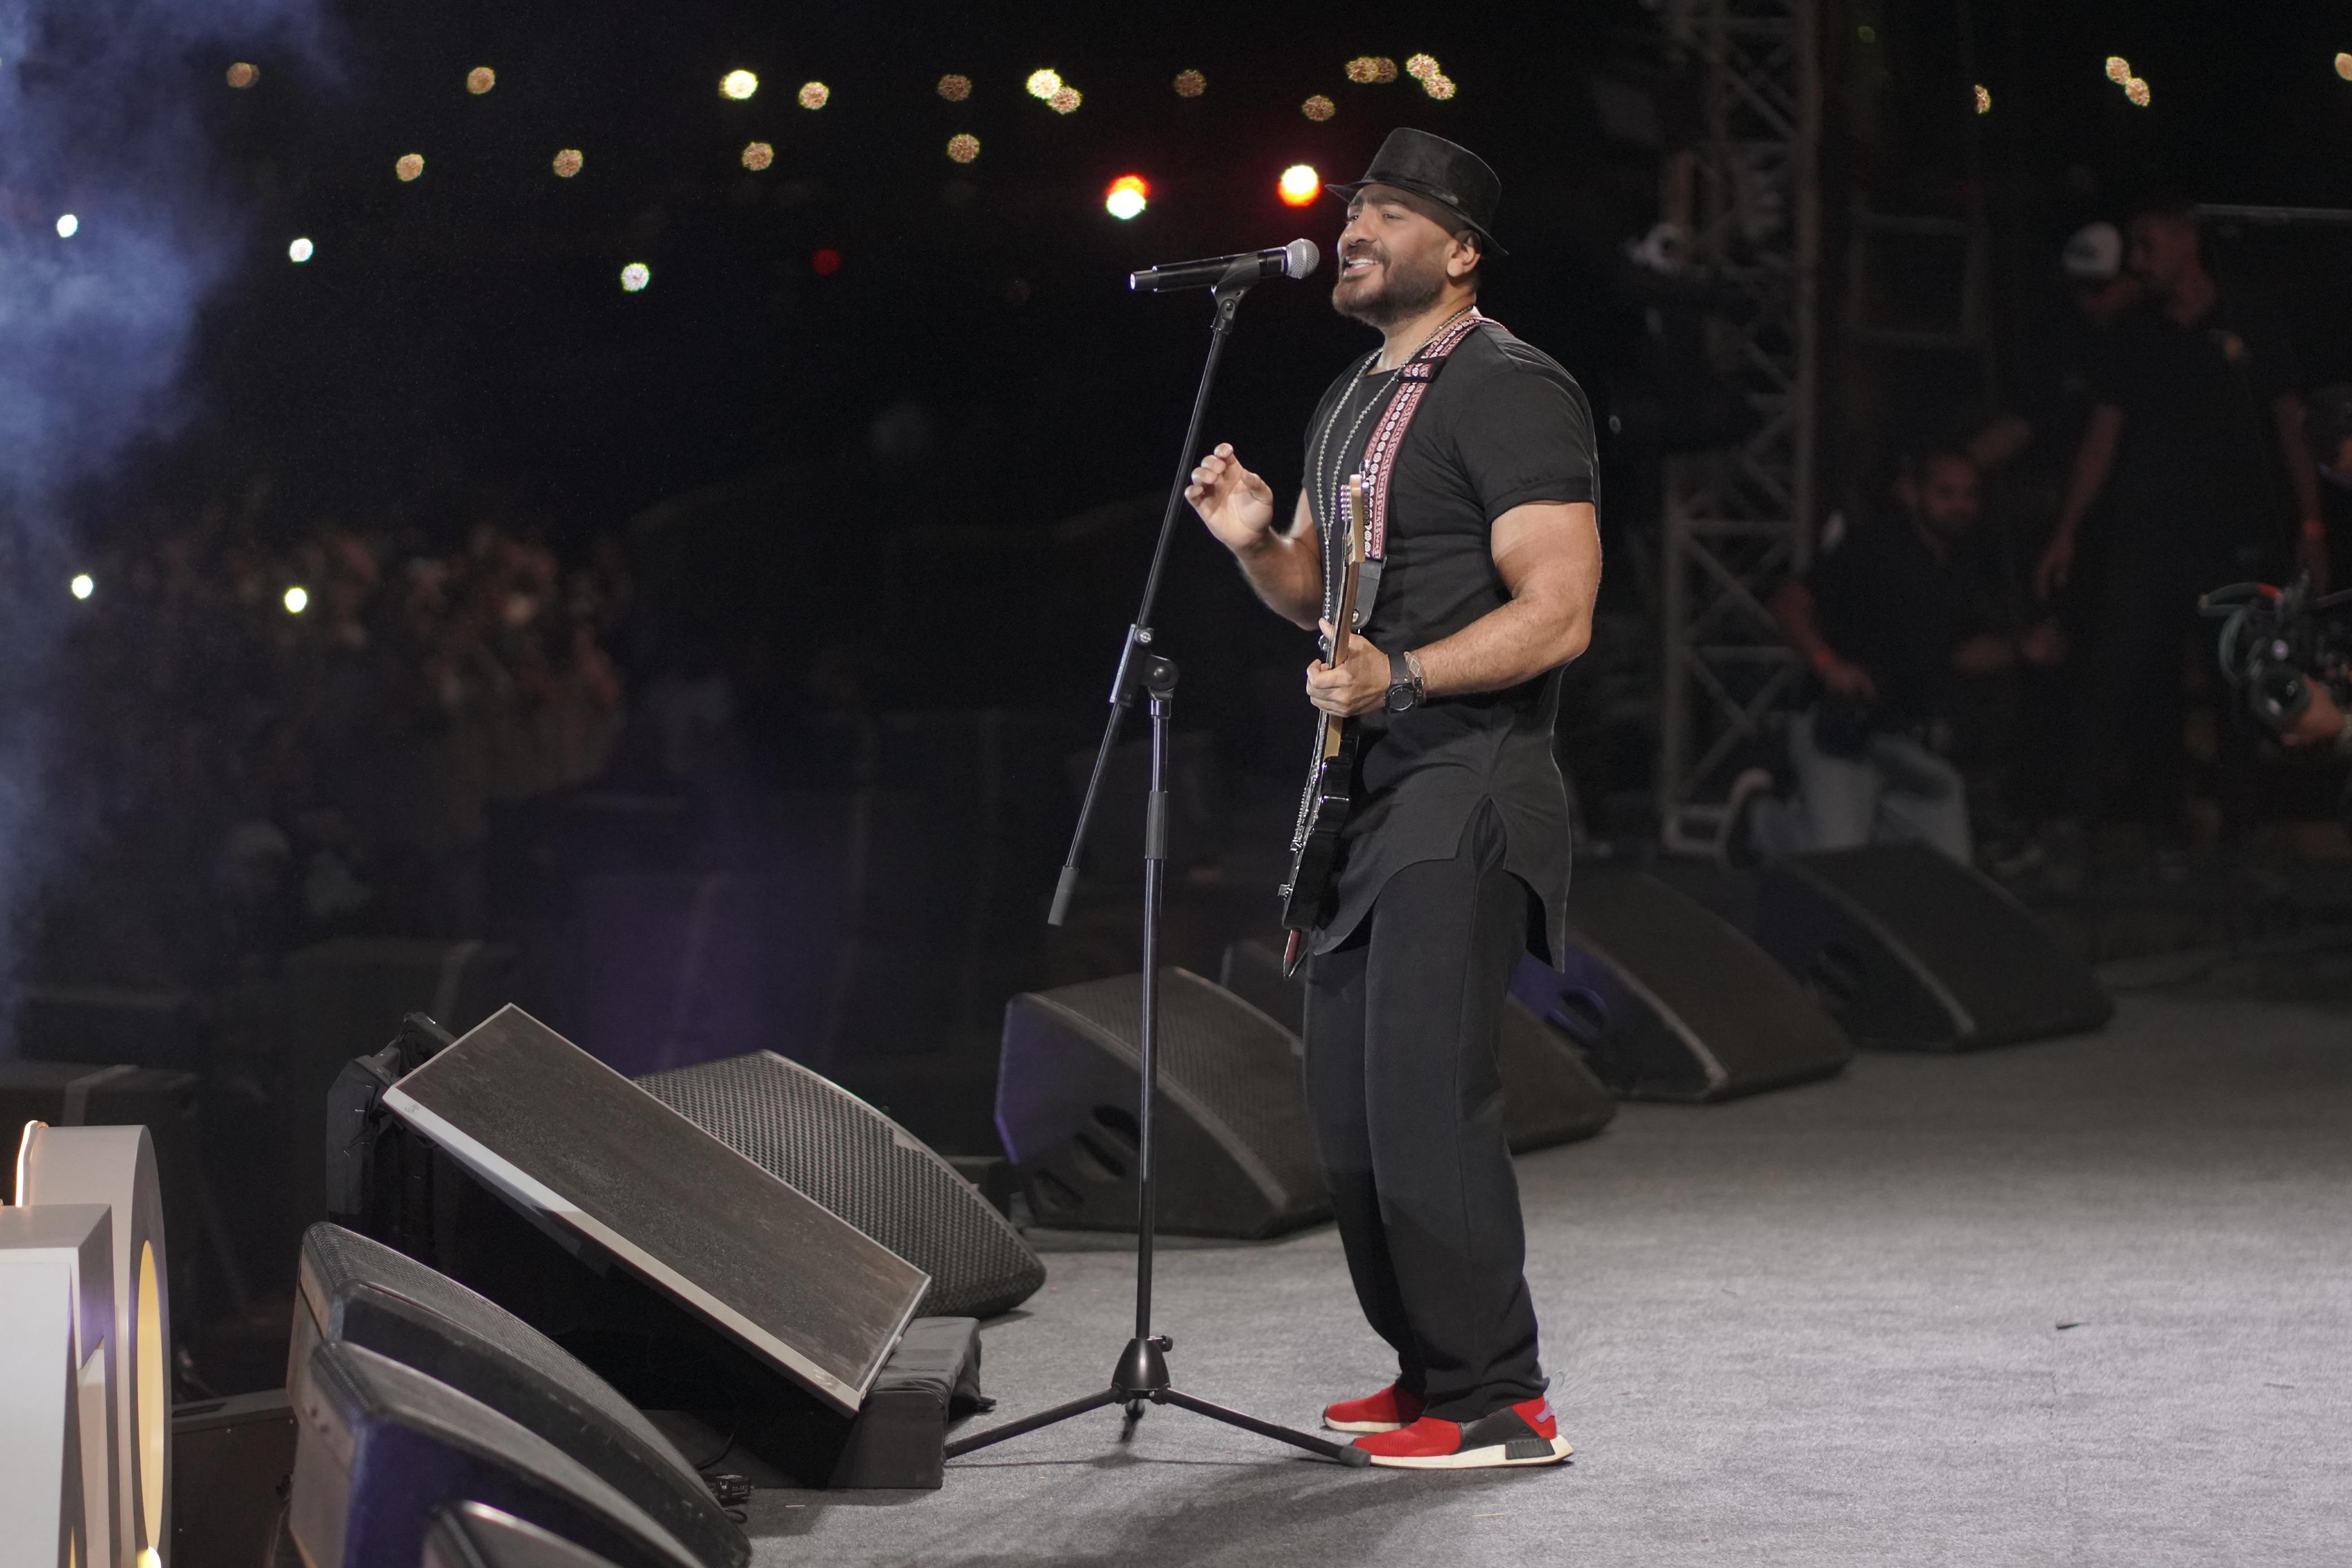 تامر حسني يفاجئ جمهوره بعروض استثنائية في حفله بالتجمع